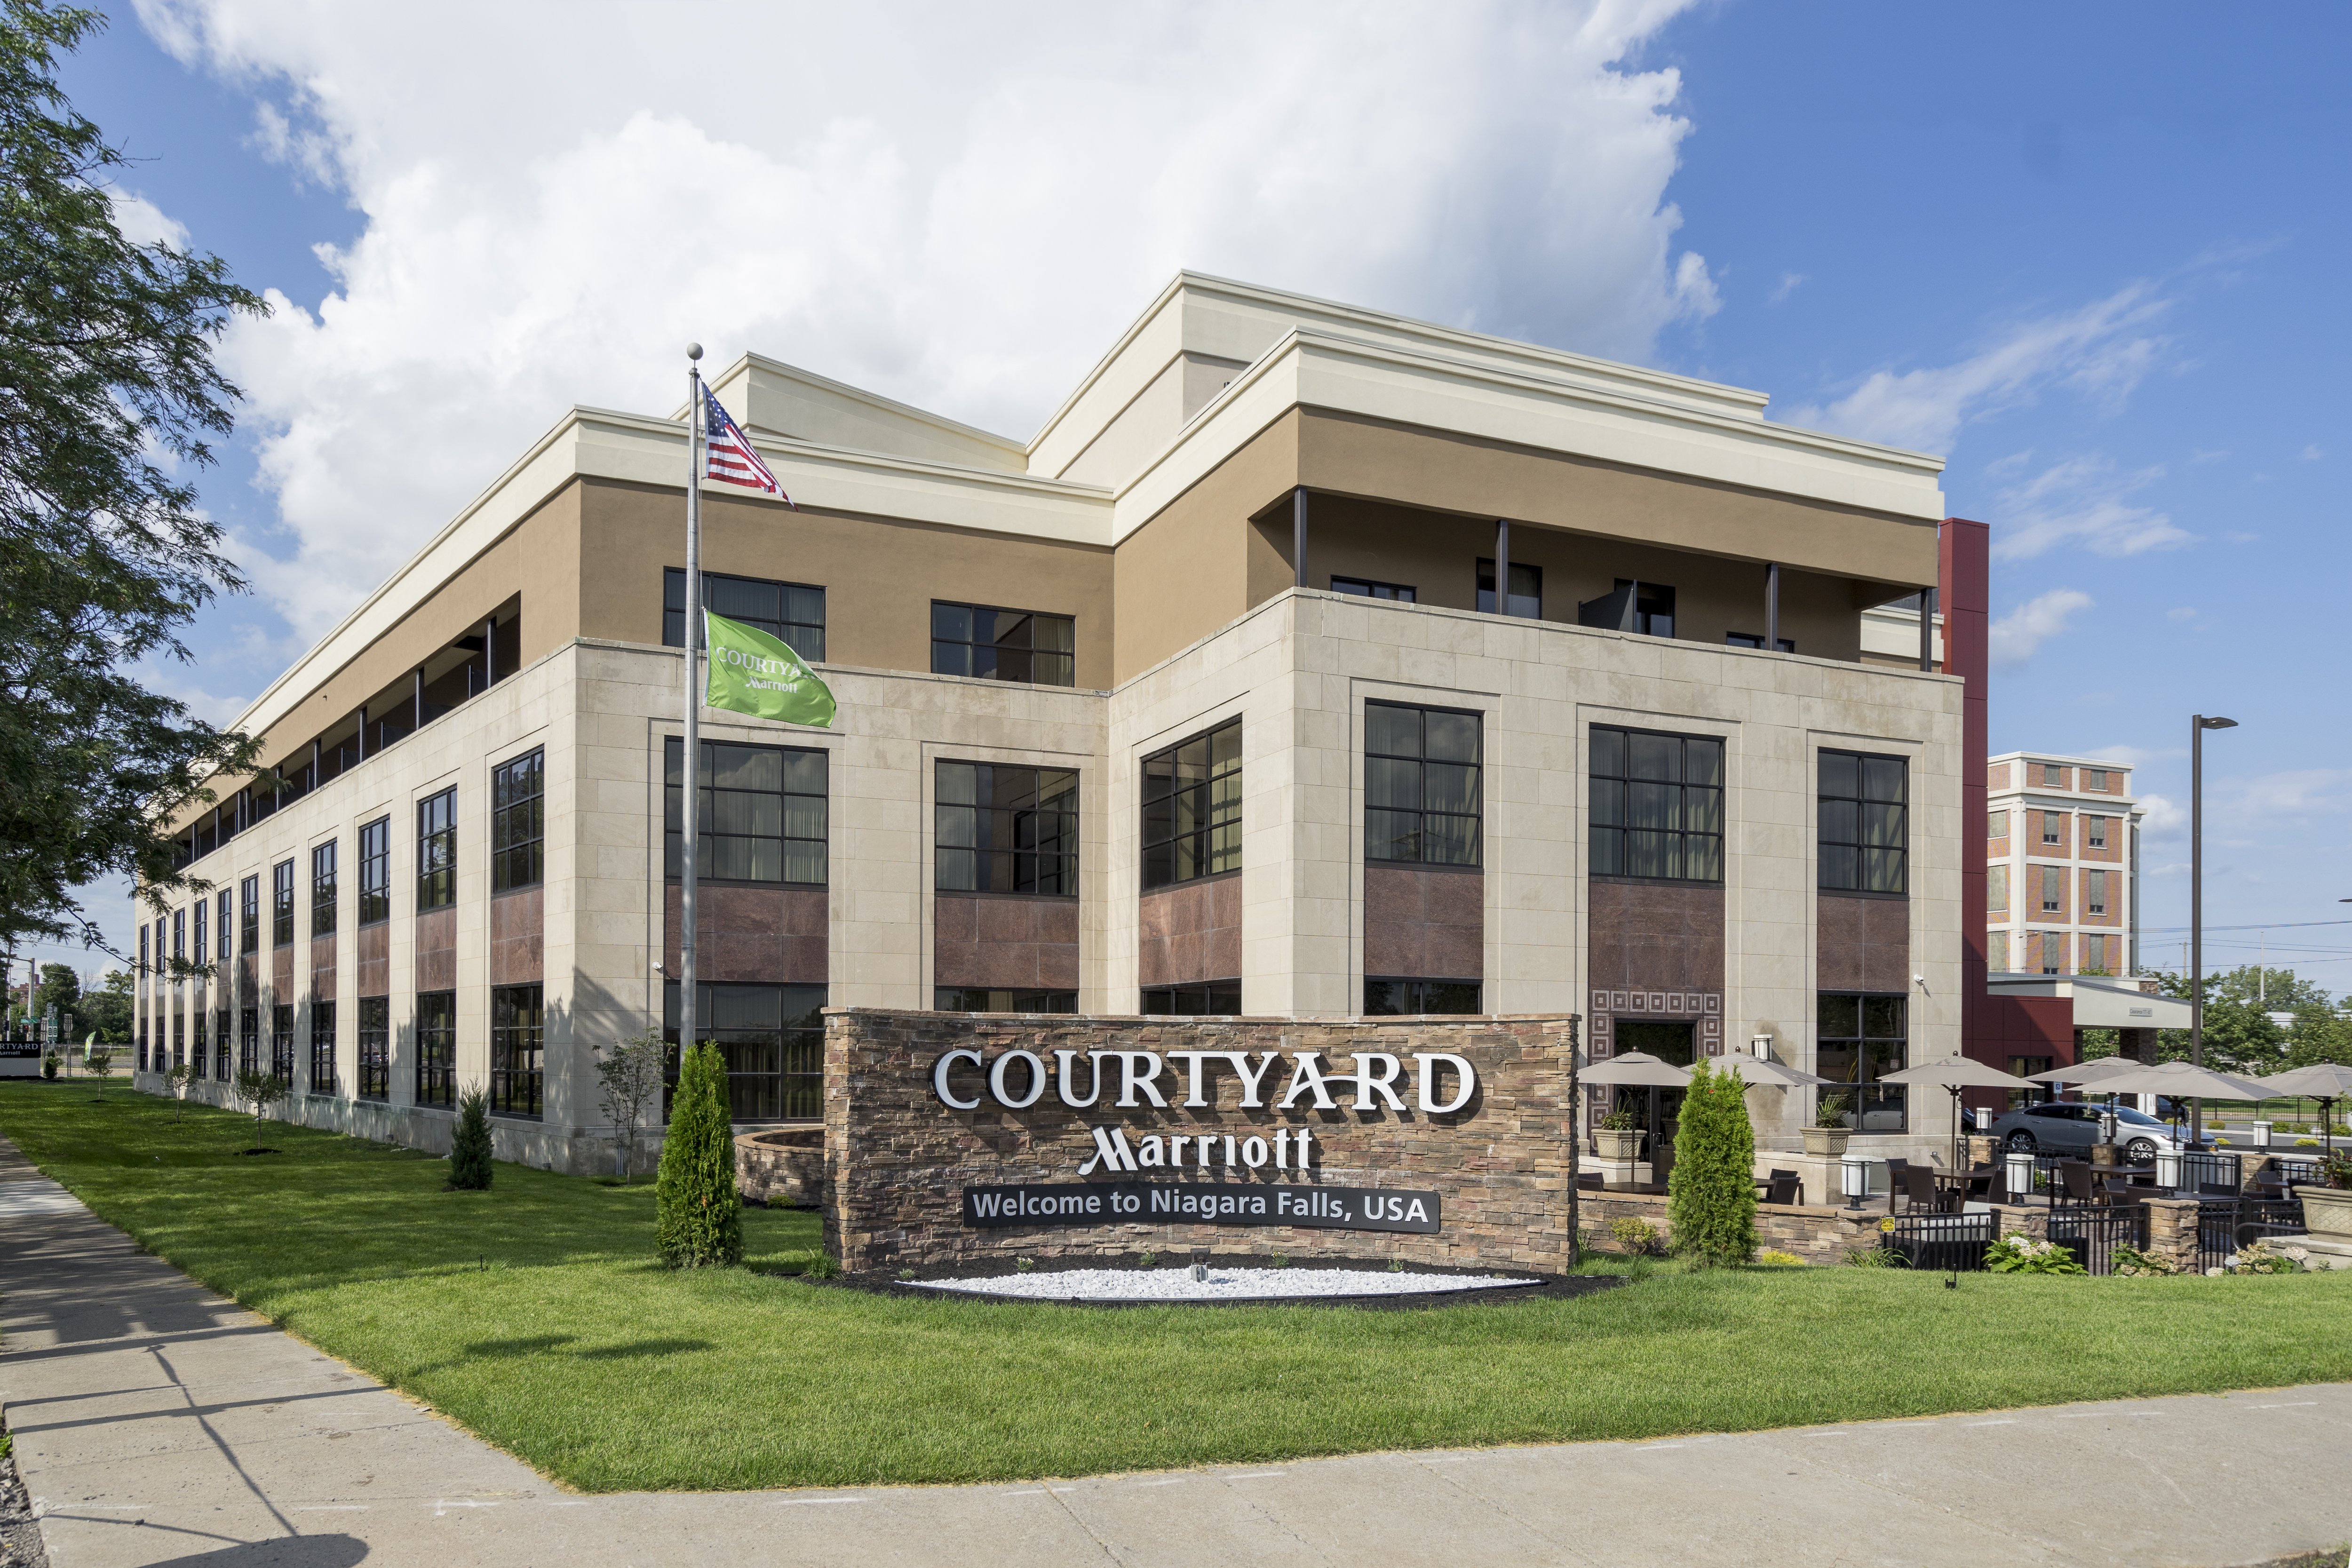 Courtyard Marriott Opens In Niagara Falls Buffalo Rising